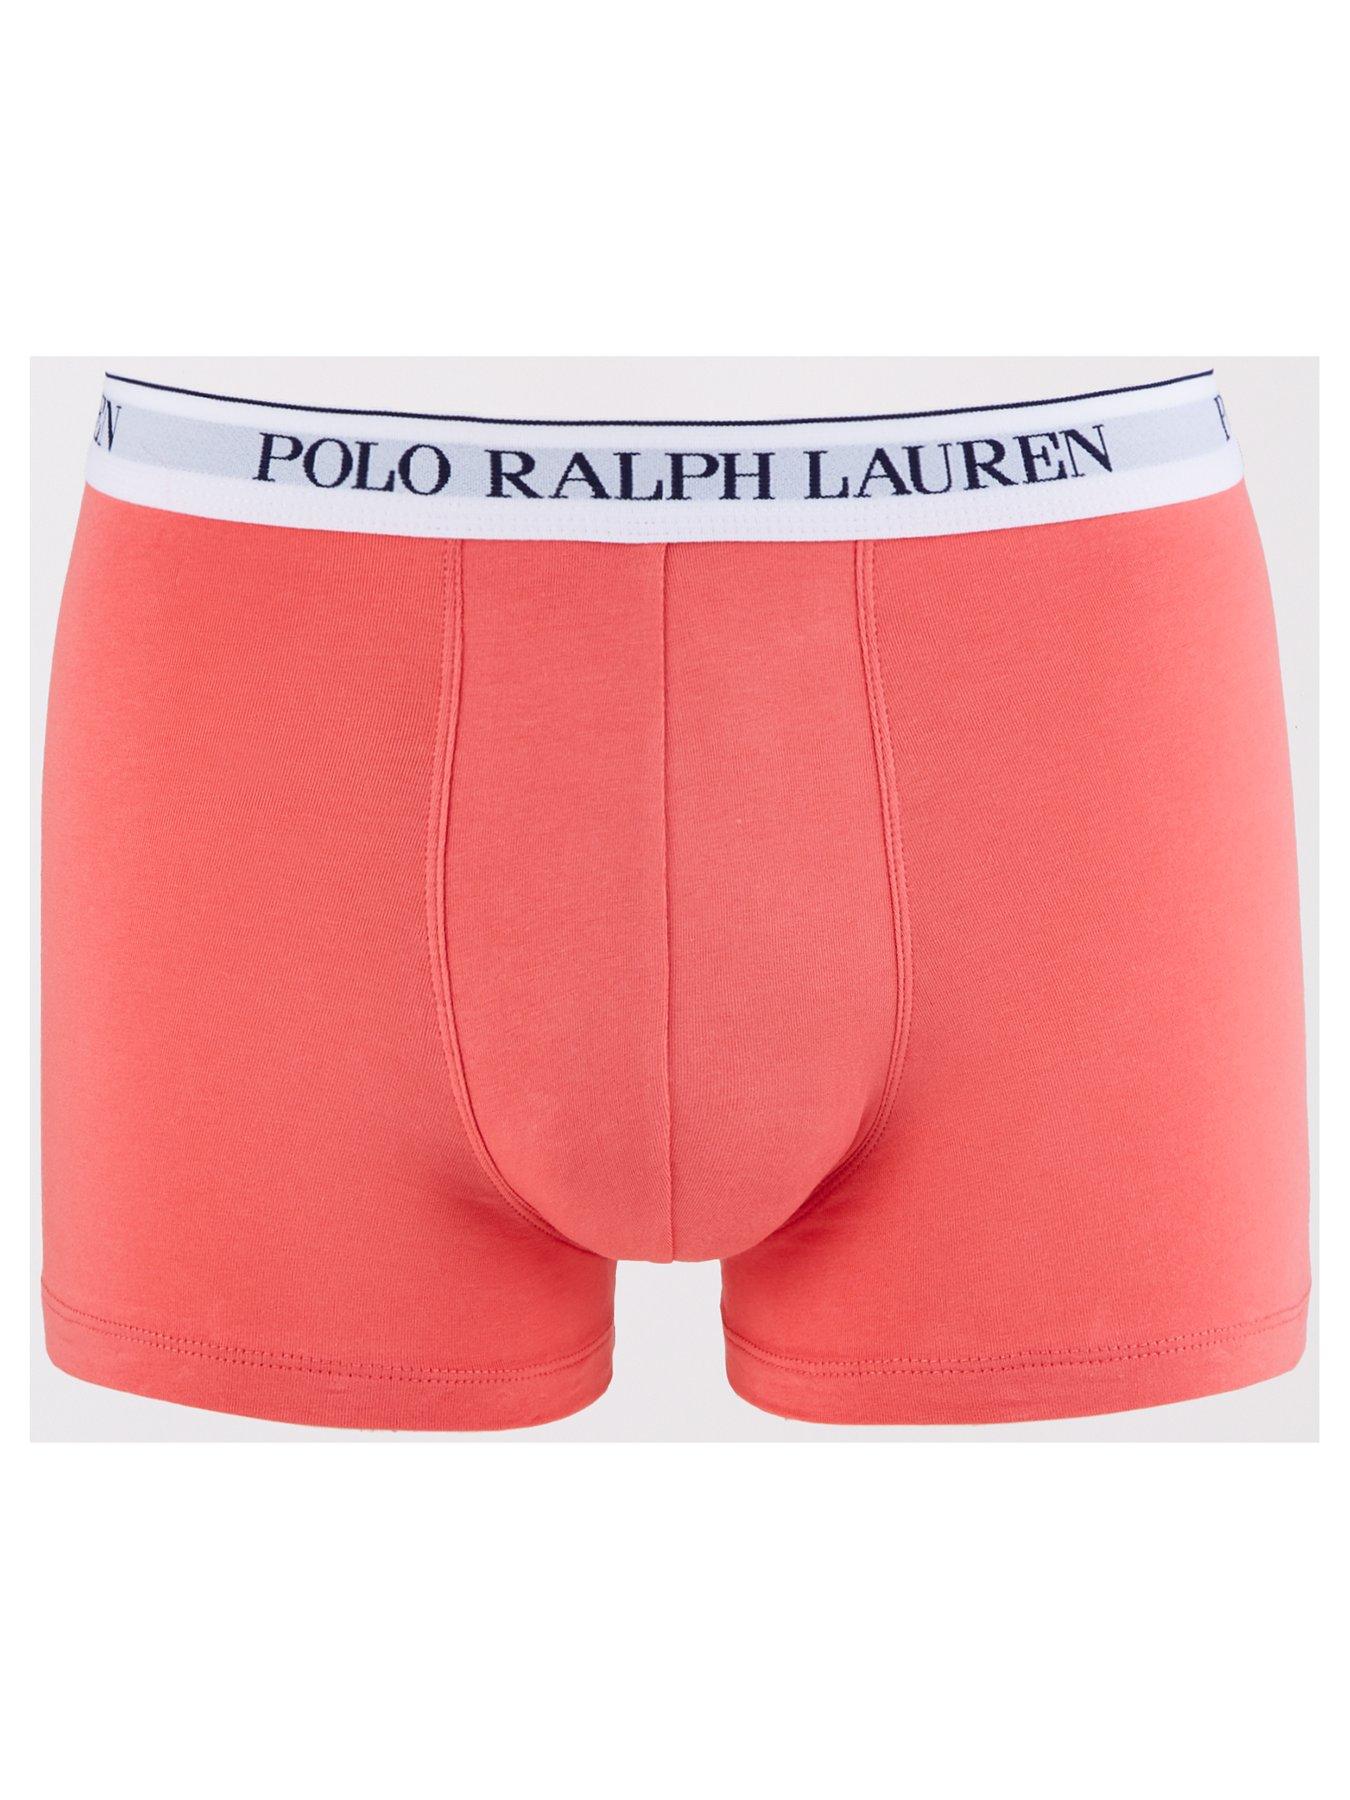 Polo Ralph Lauren Classic 3 Pack Trunks - Multi